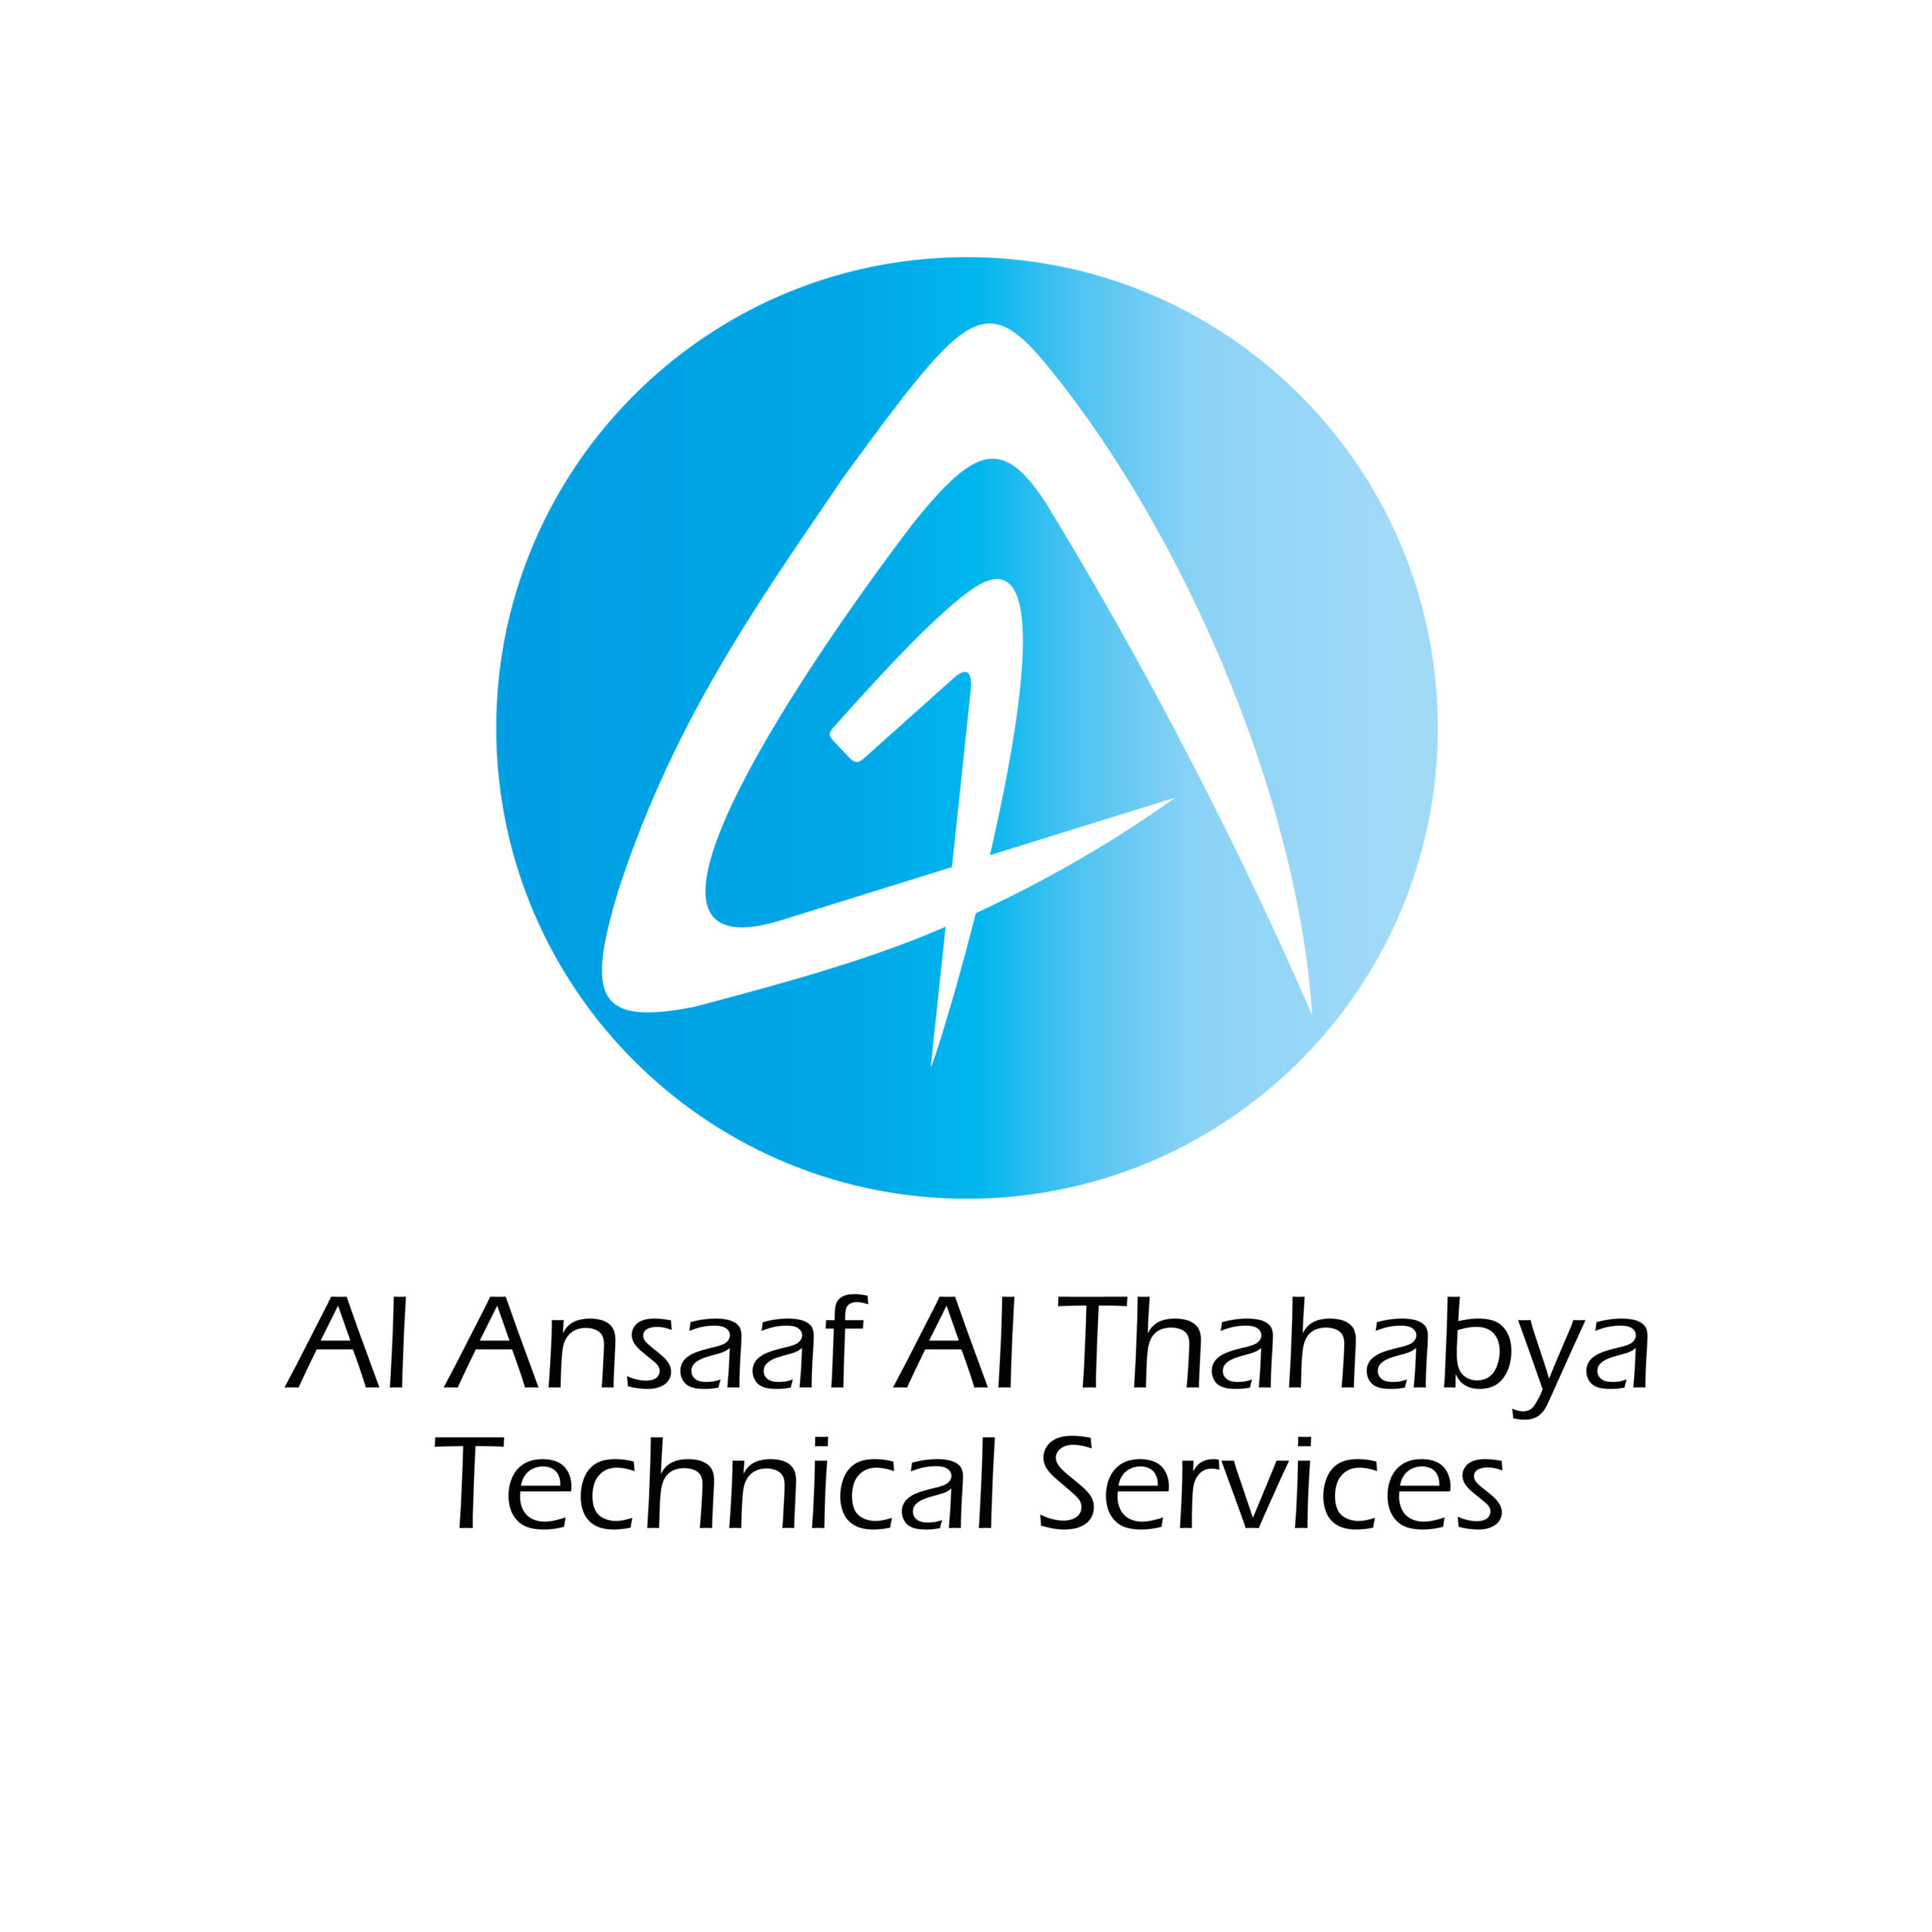 Al Ansaaf Al Thahabya Technical Services